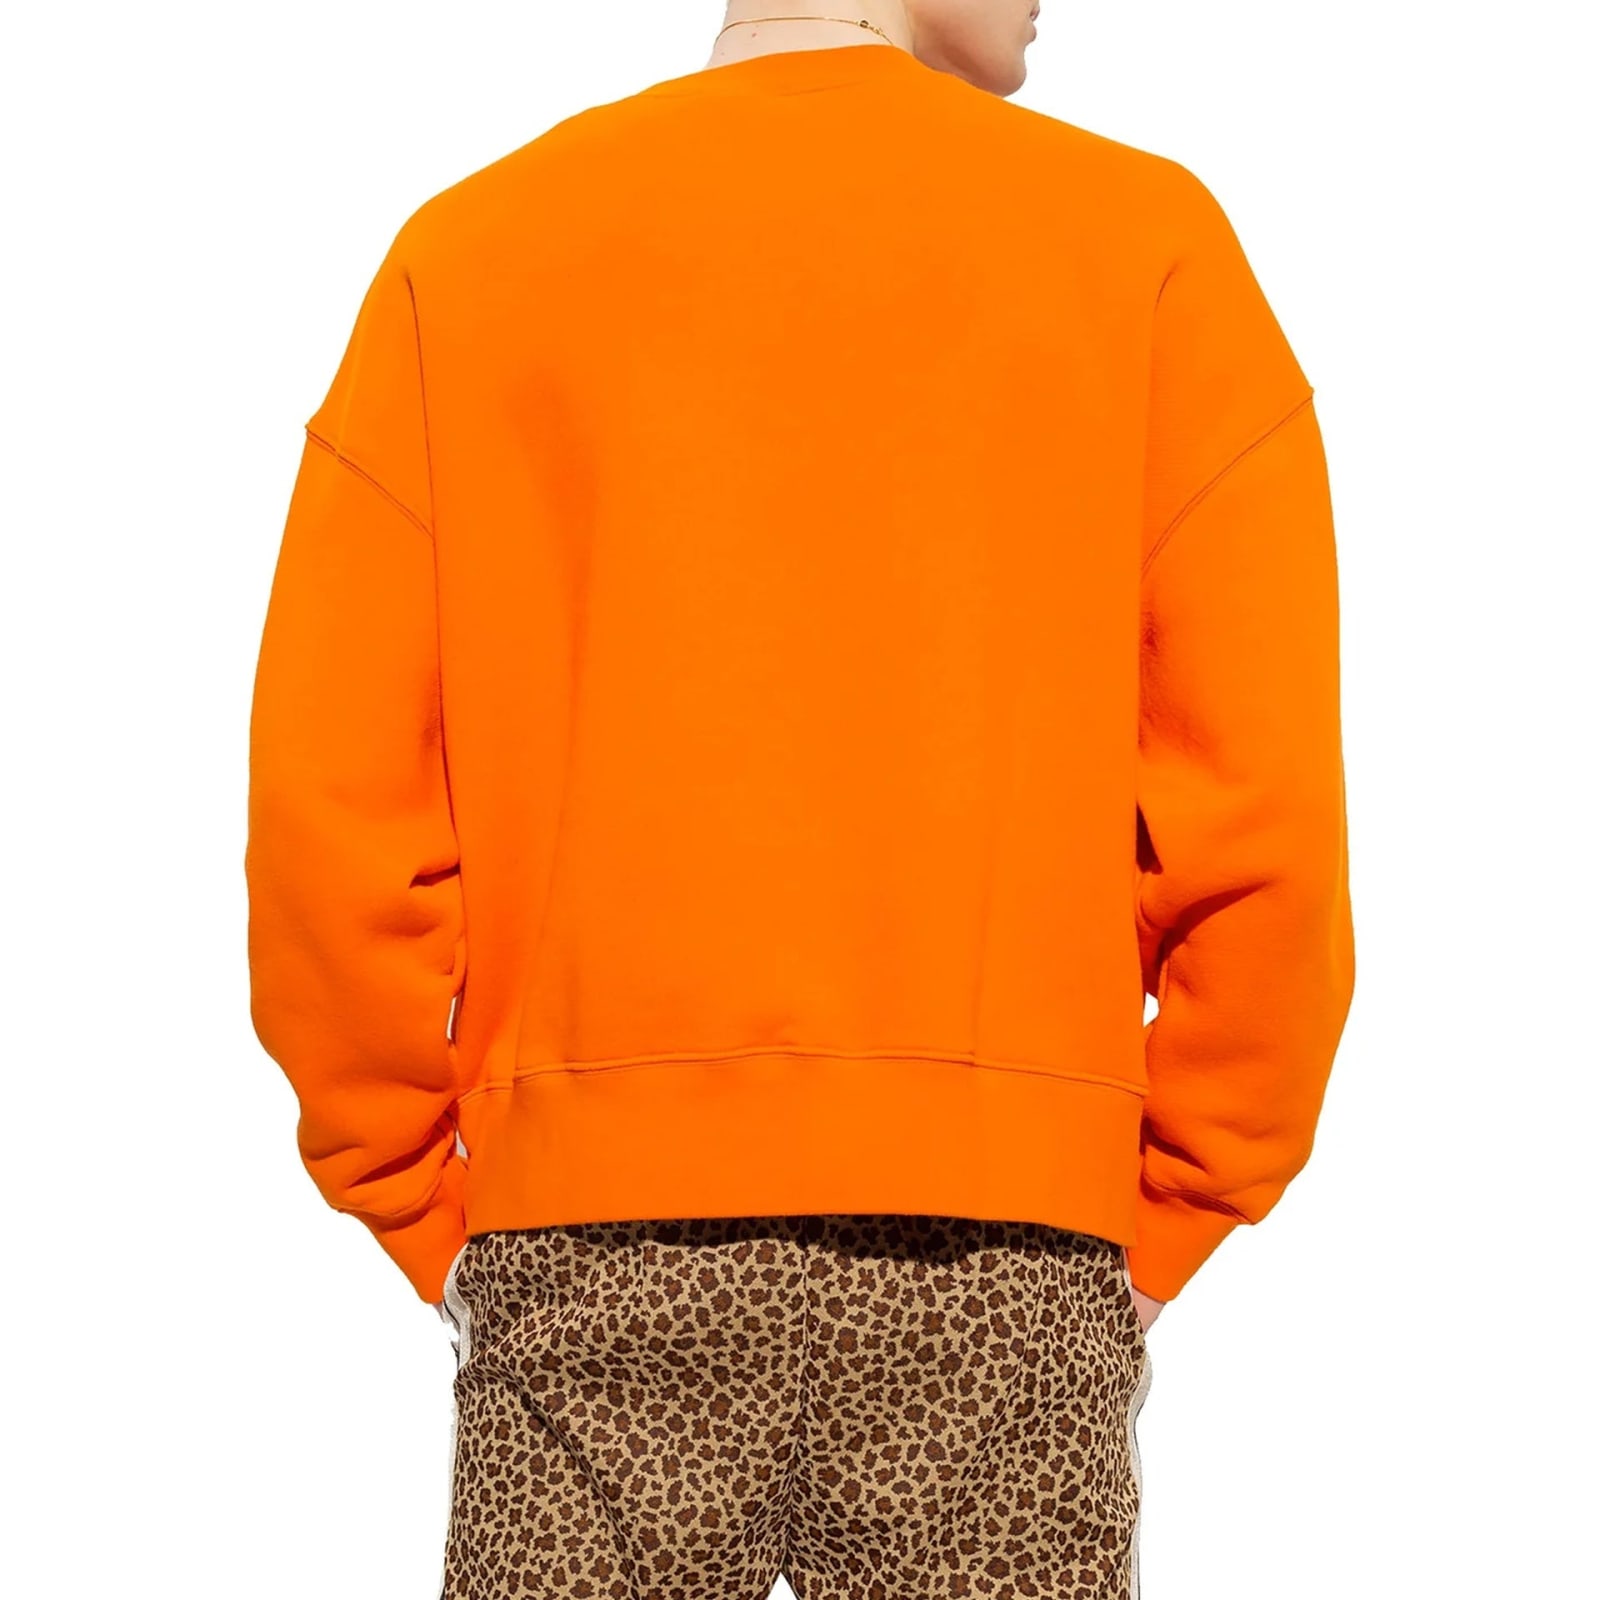 Shop Palm Angels Cotton Logo Sweatshirt In Orange